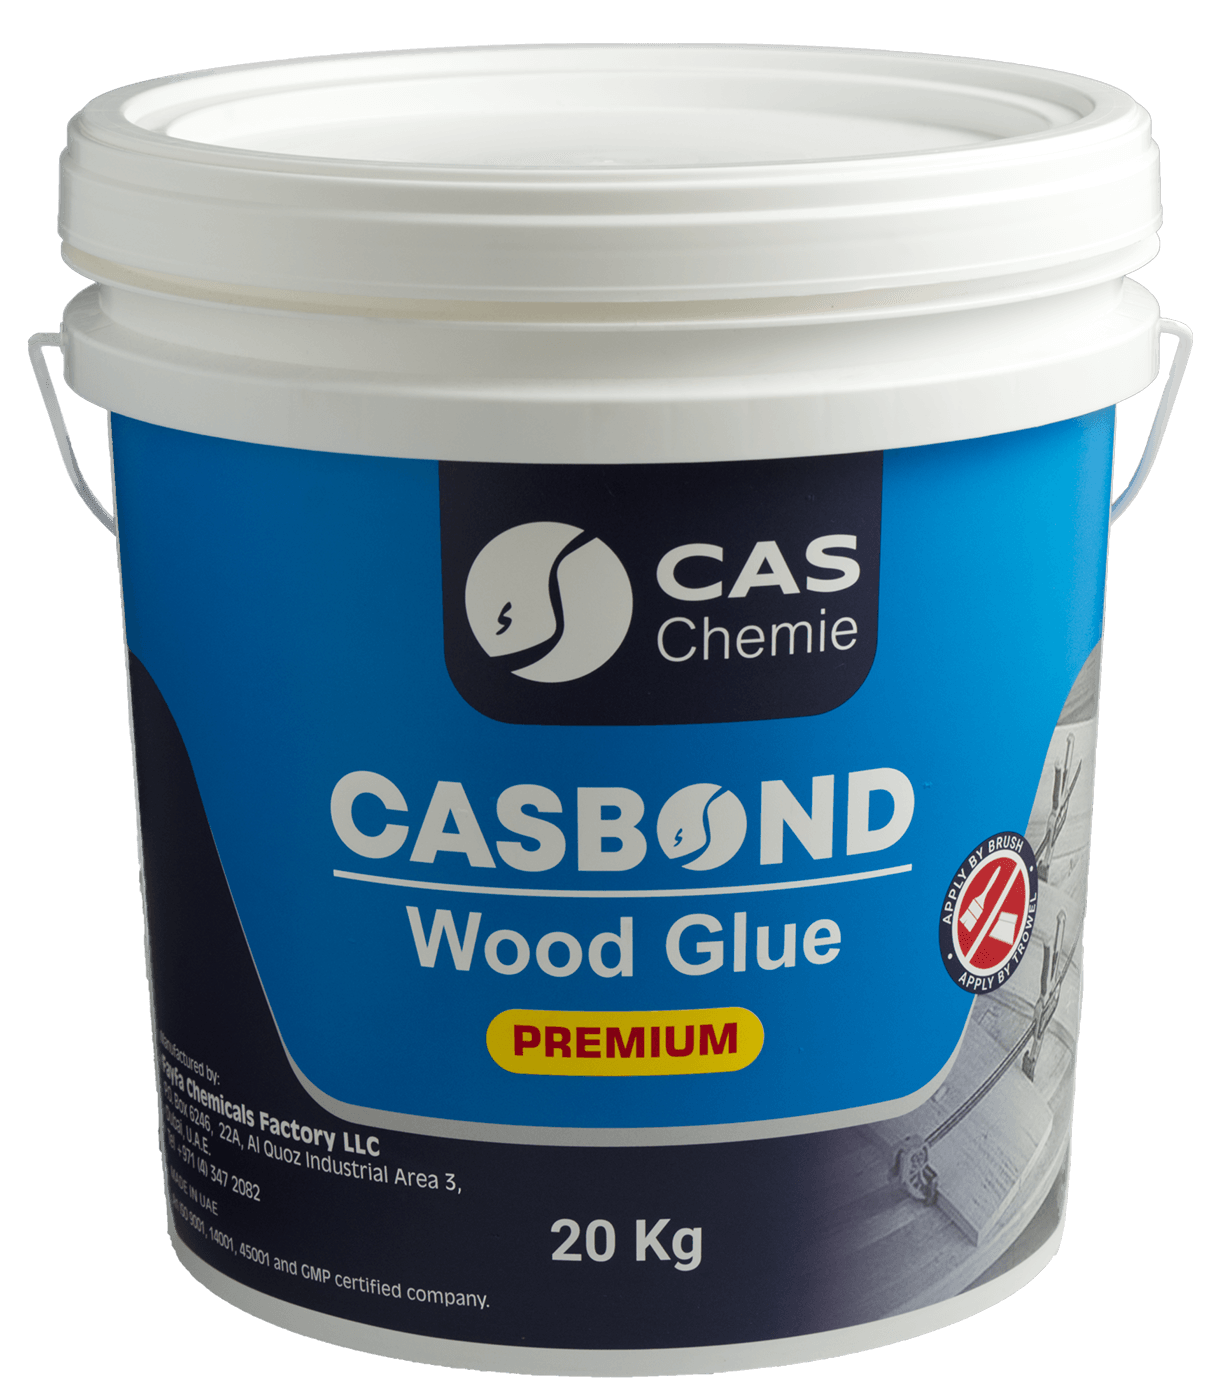 CasBond Premium Wood Glue